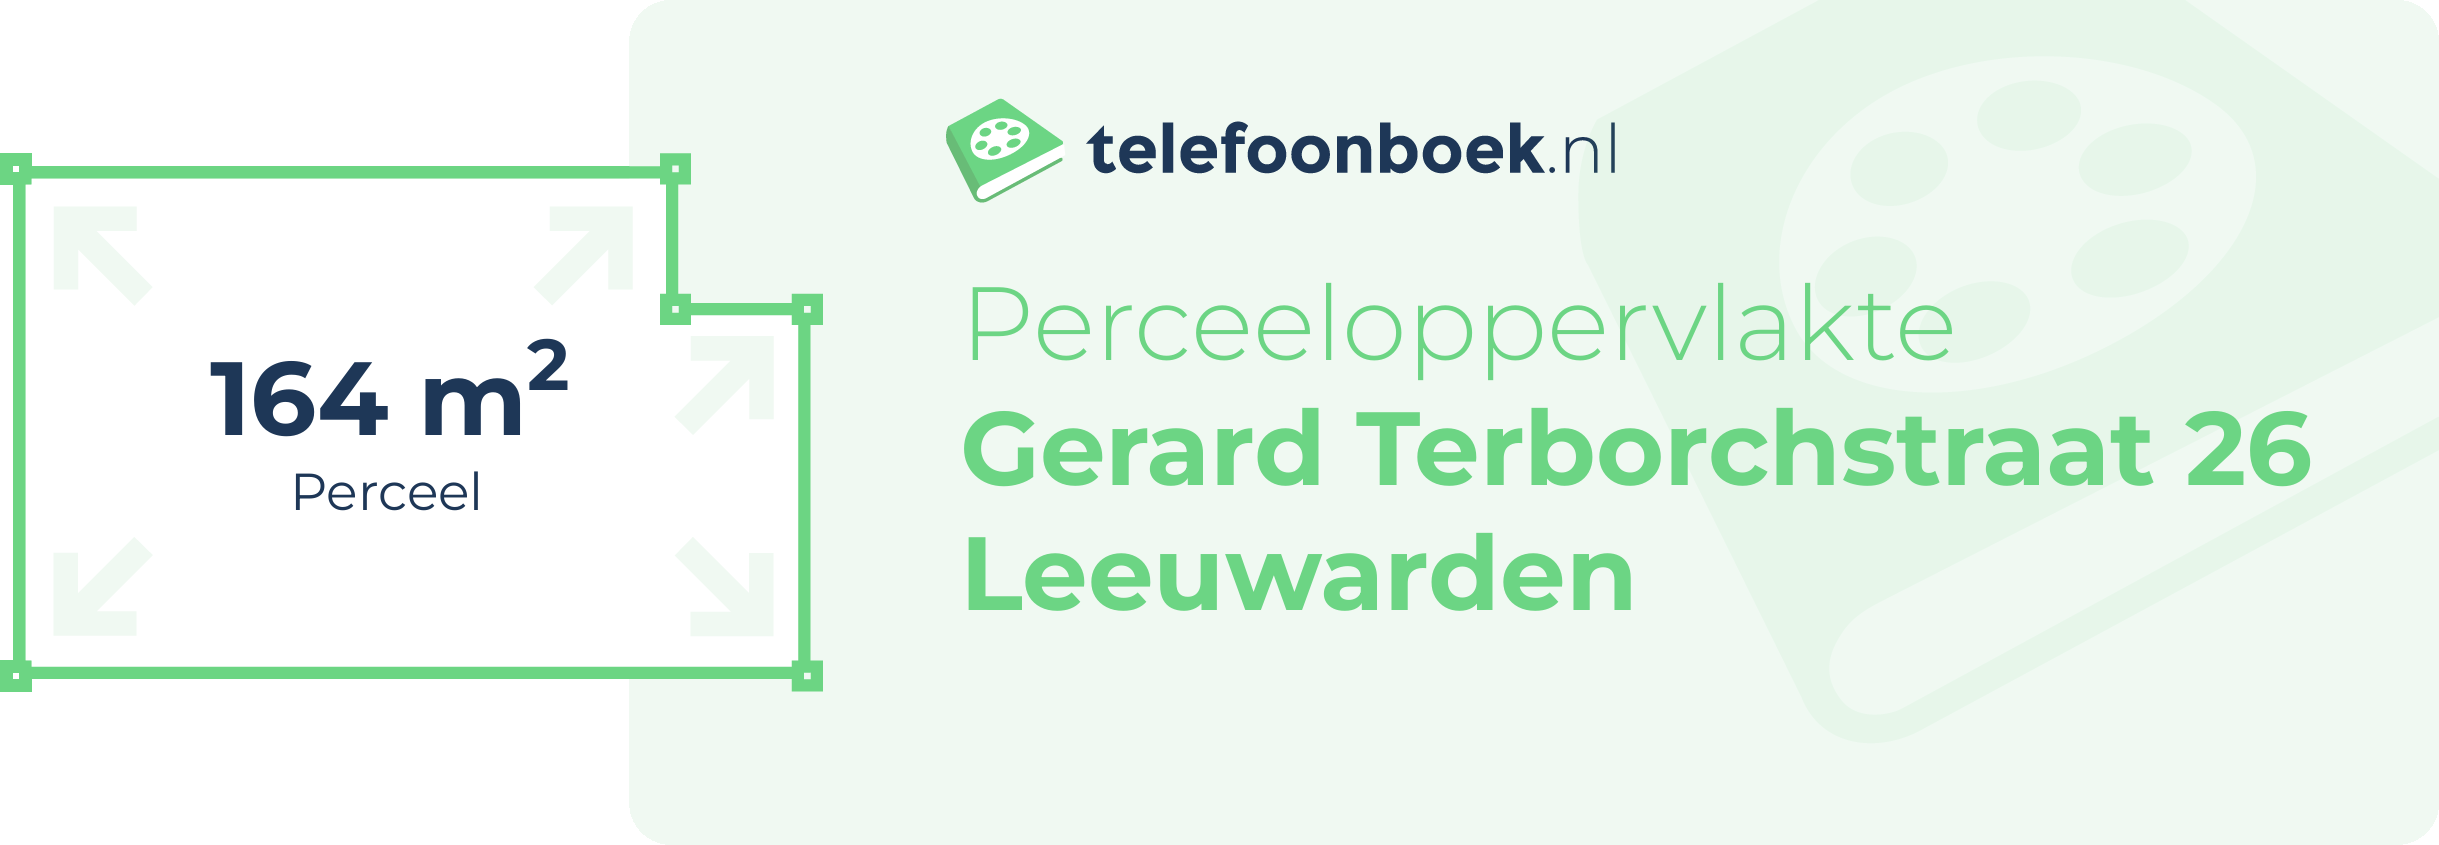 Perceeloppervlakte Gerard Terborchstraat 26 Leeuwarden